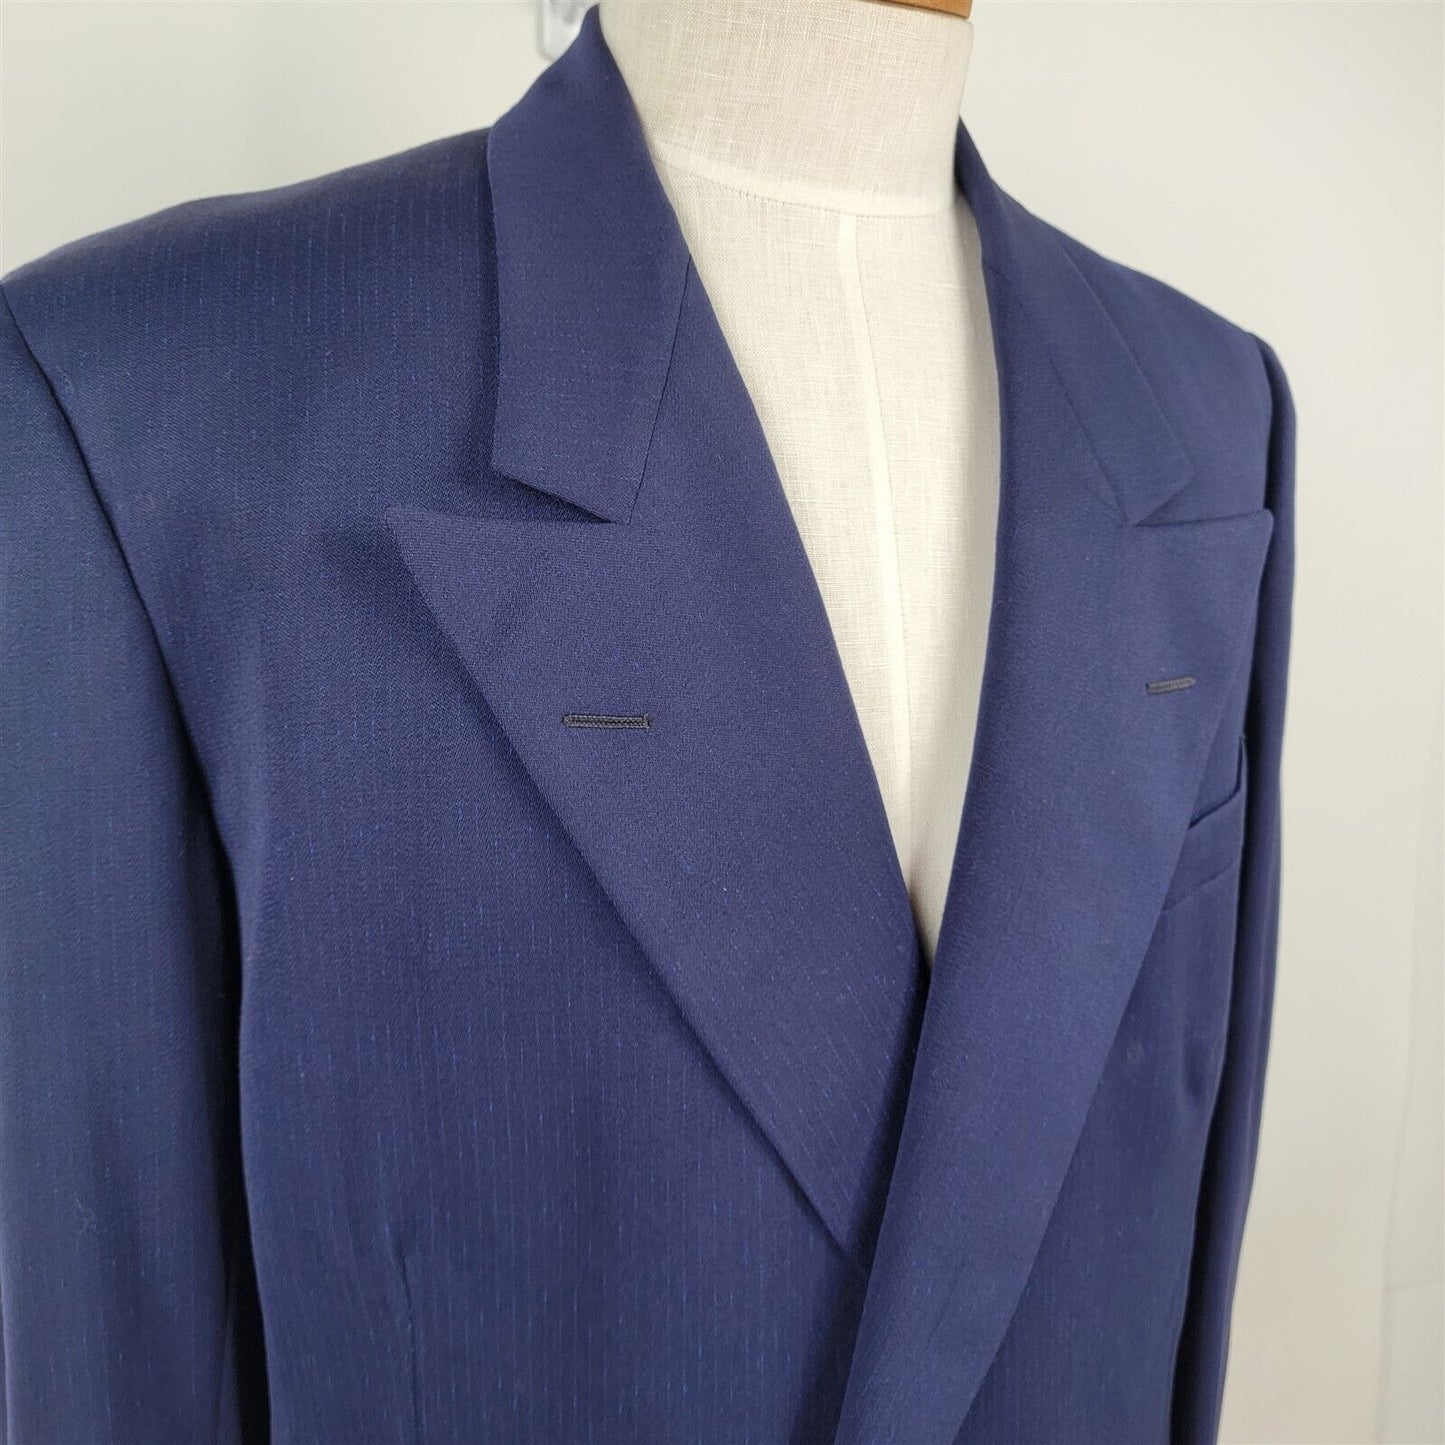 Vintage Trojan Jim Clinton Blue Two Button Blazer Sports Coat Jacket Mens